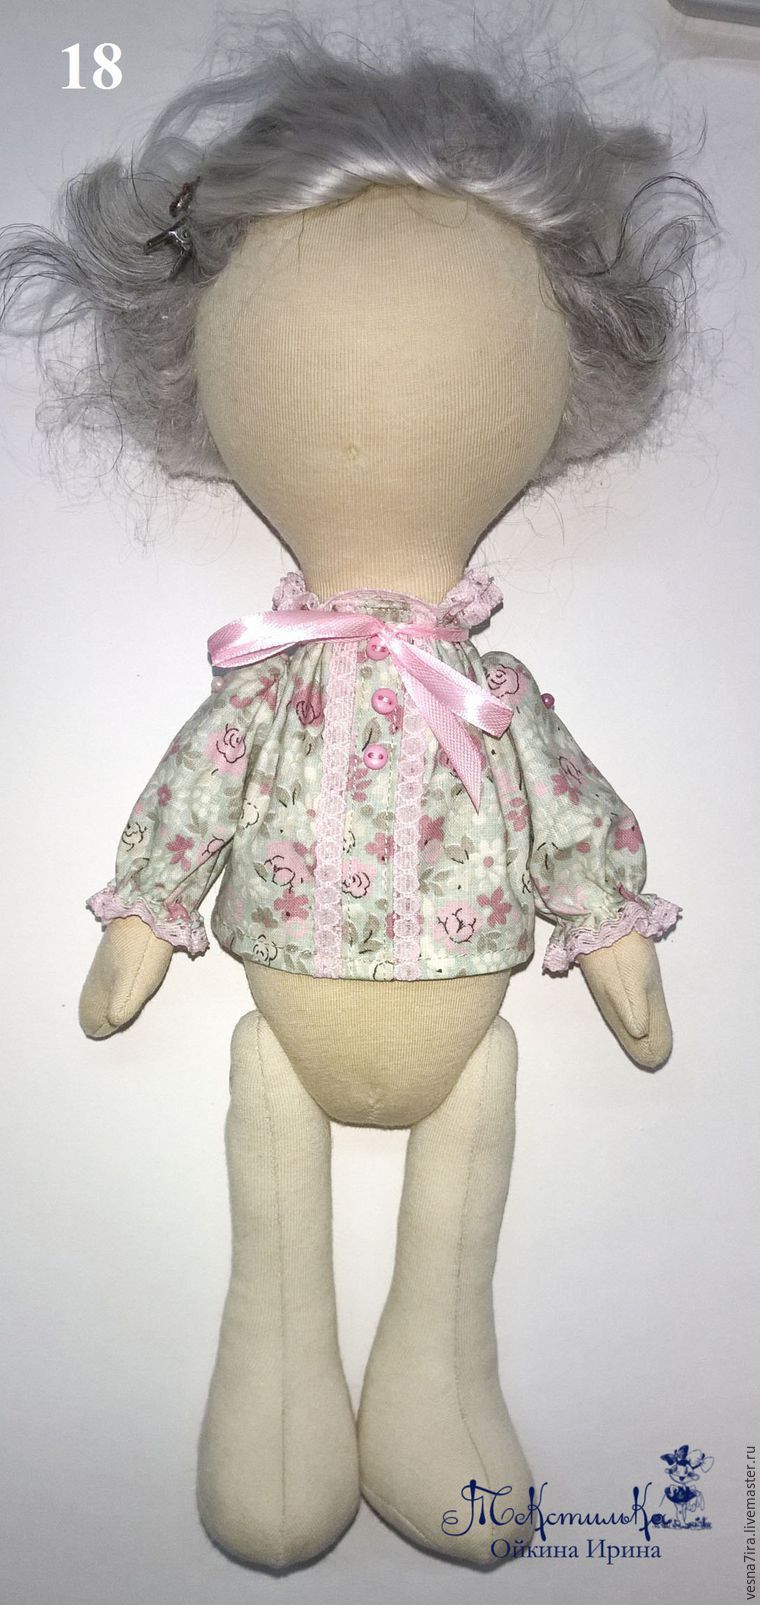 Шьем комплект одежды для куклы-большеножки, фото № 10